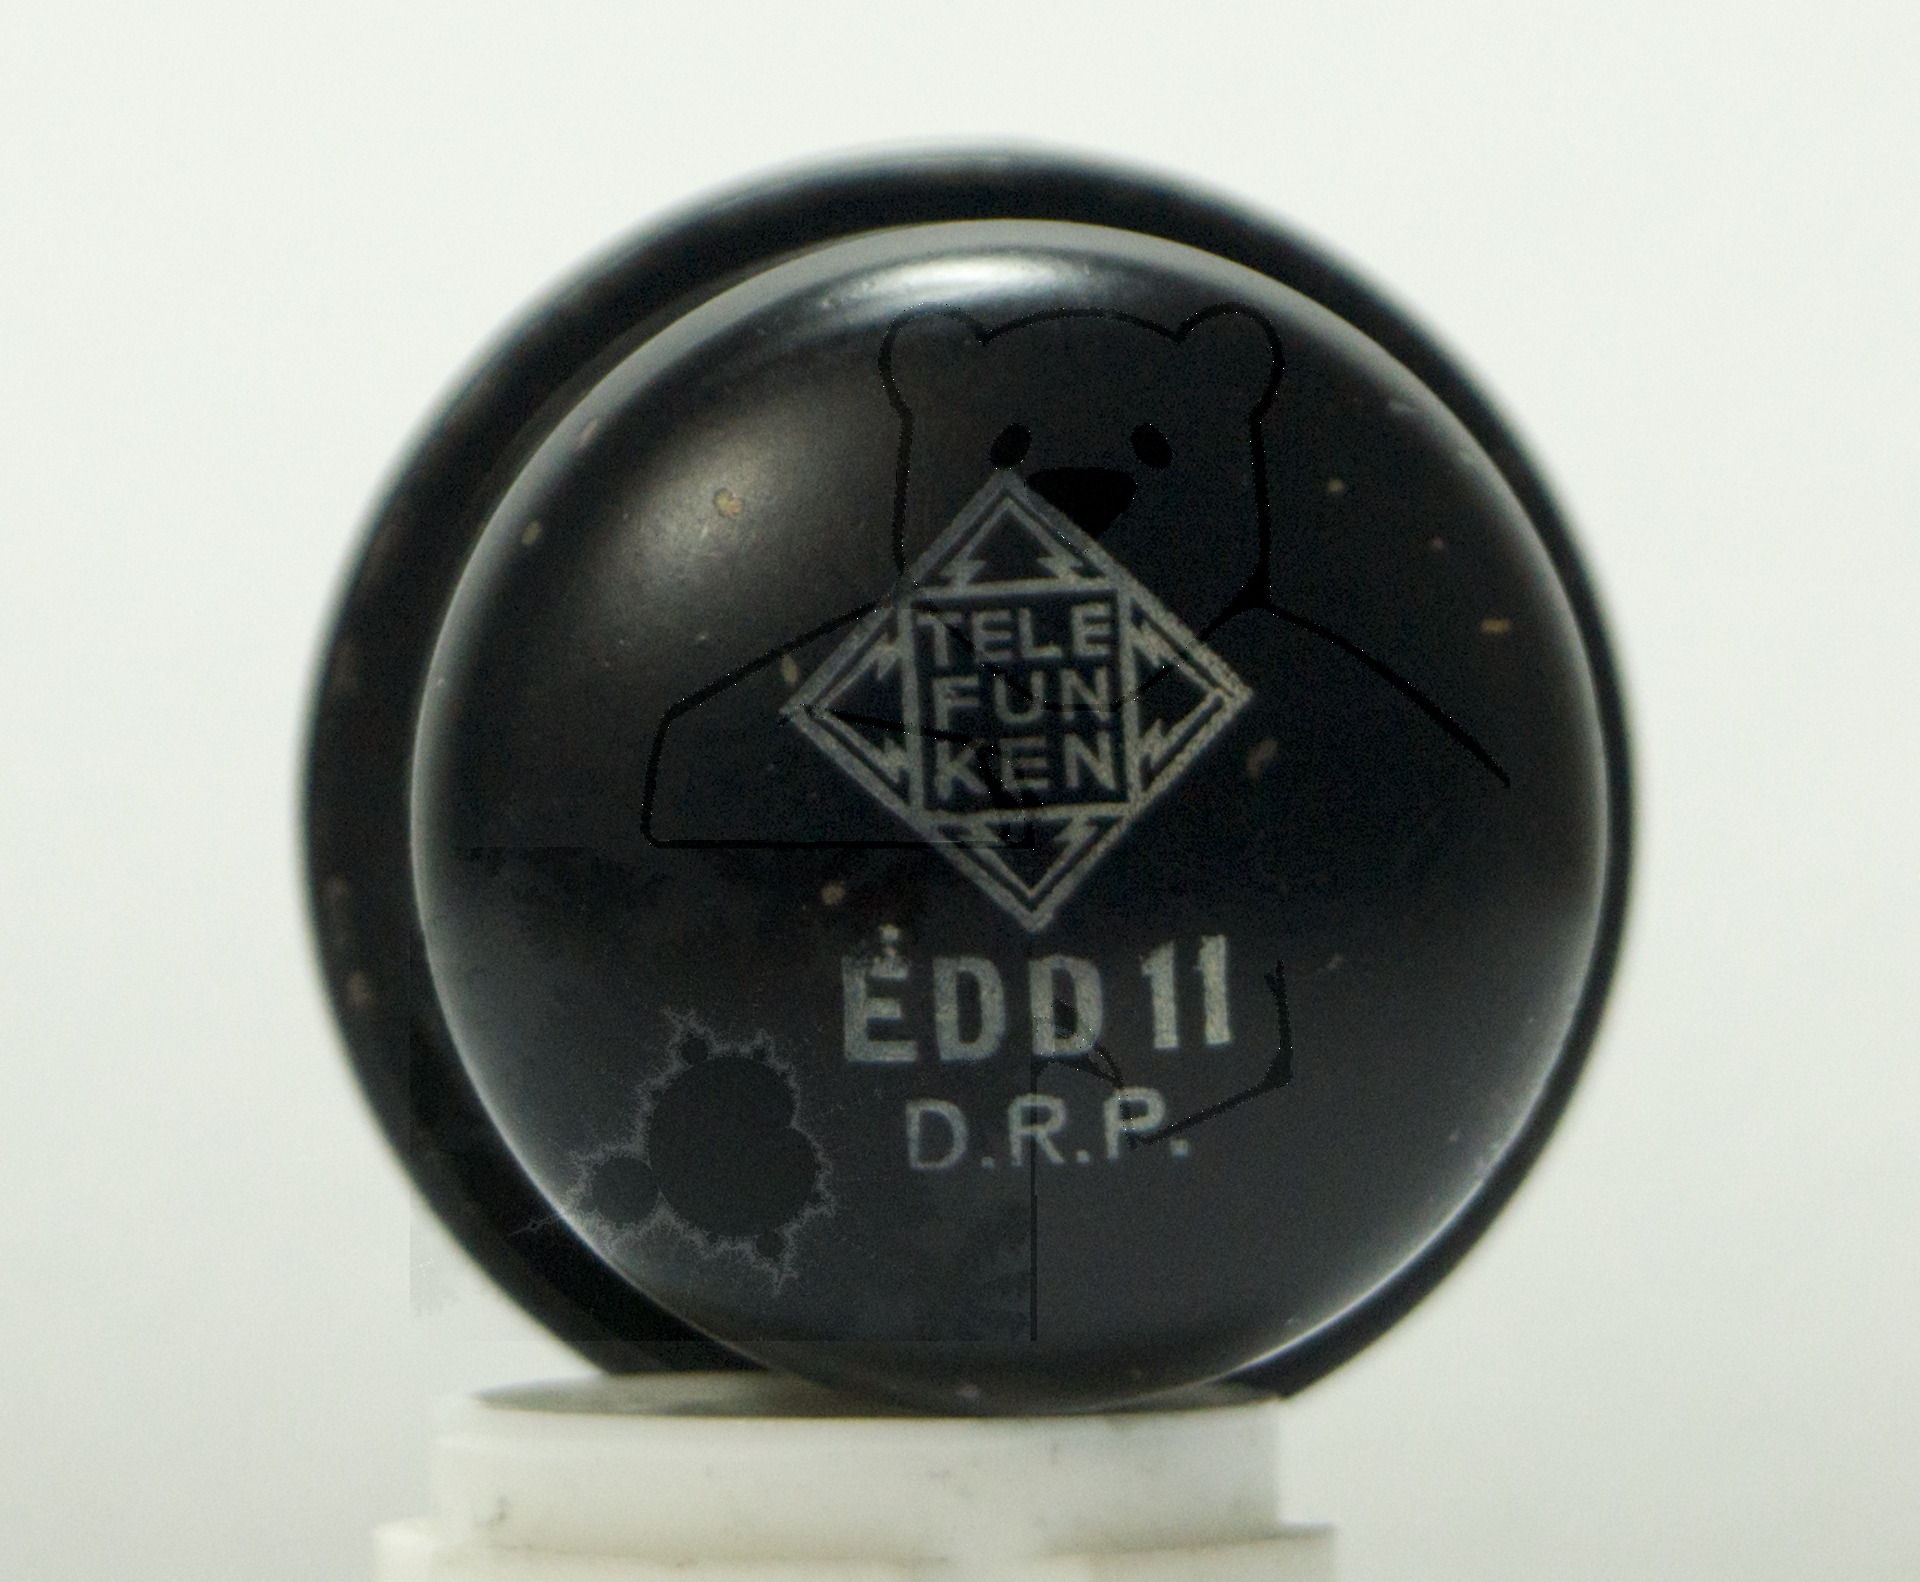 Röhre EDD11 #7512 '0' Versuchsröhre - Weiterverkauf Strafbar Bild 1